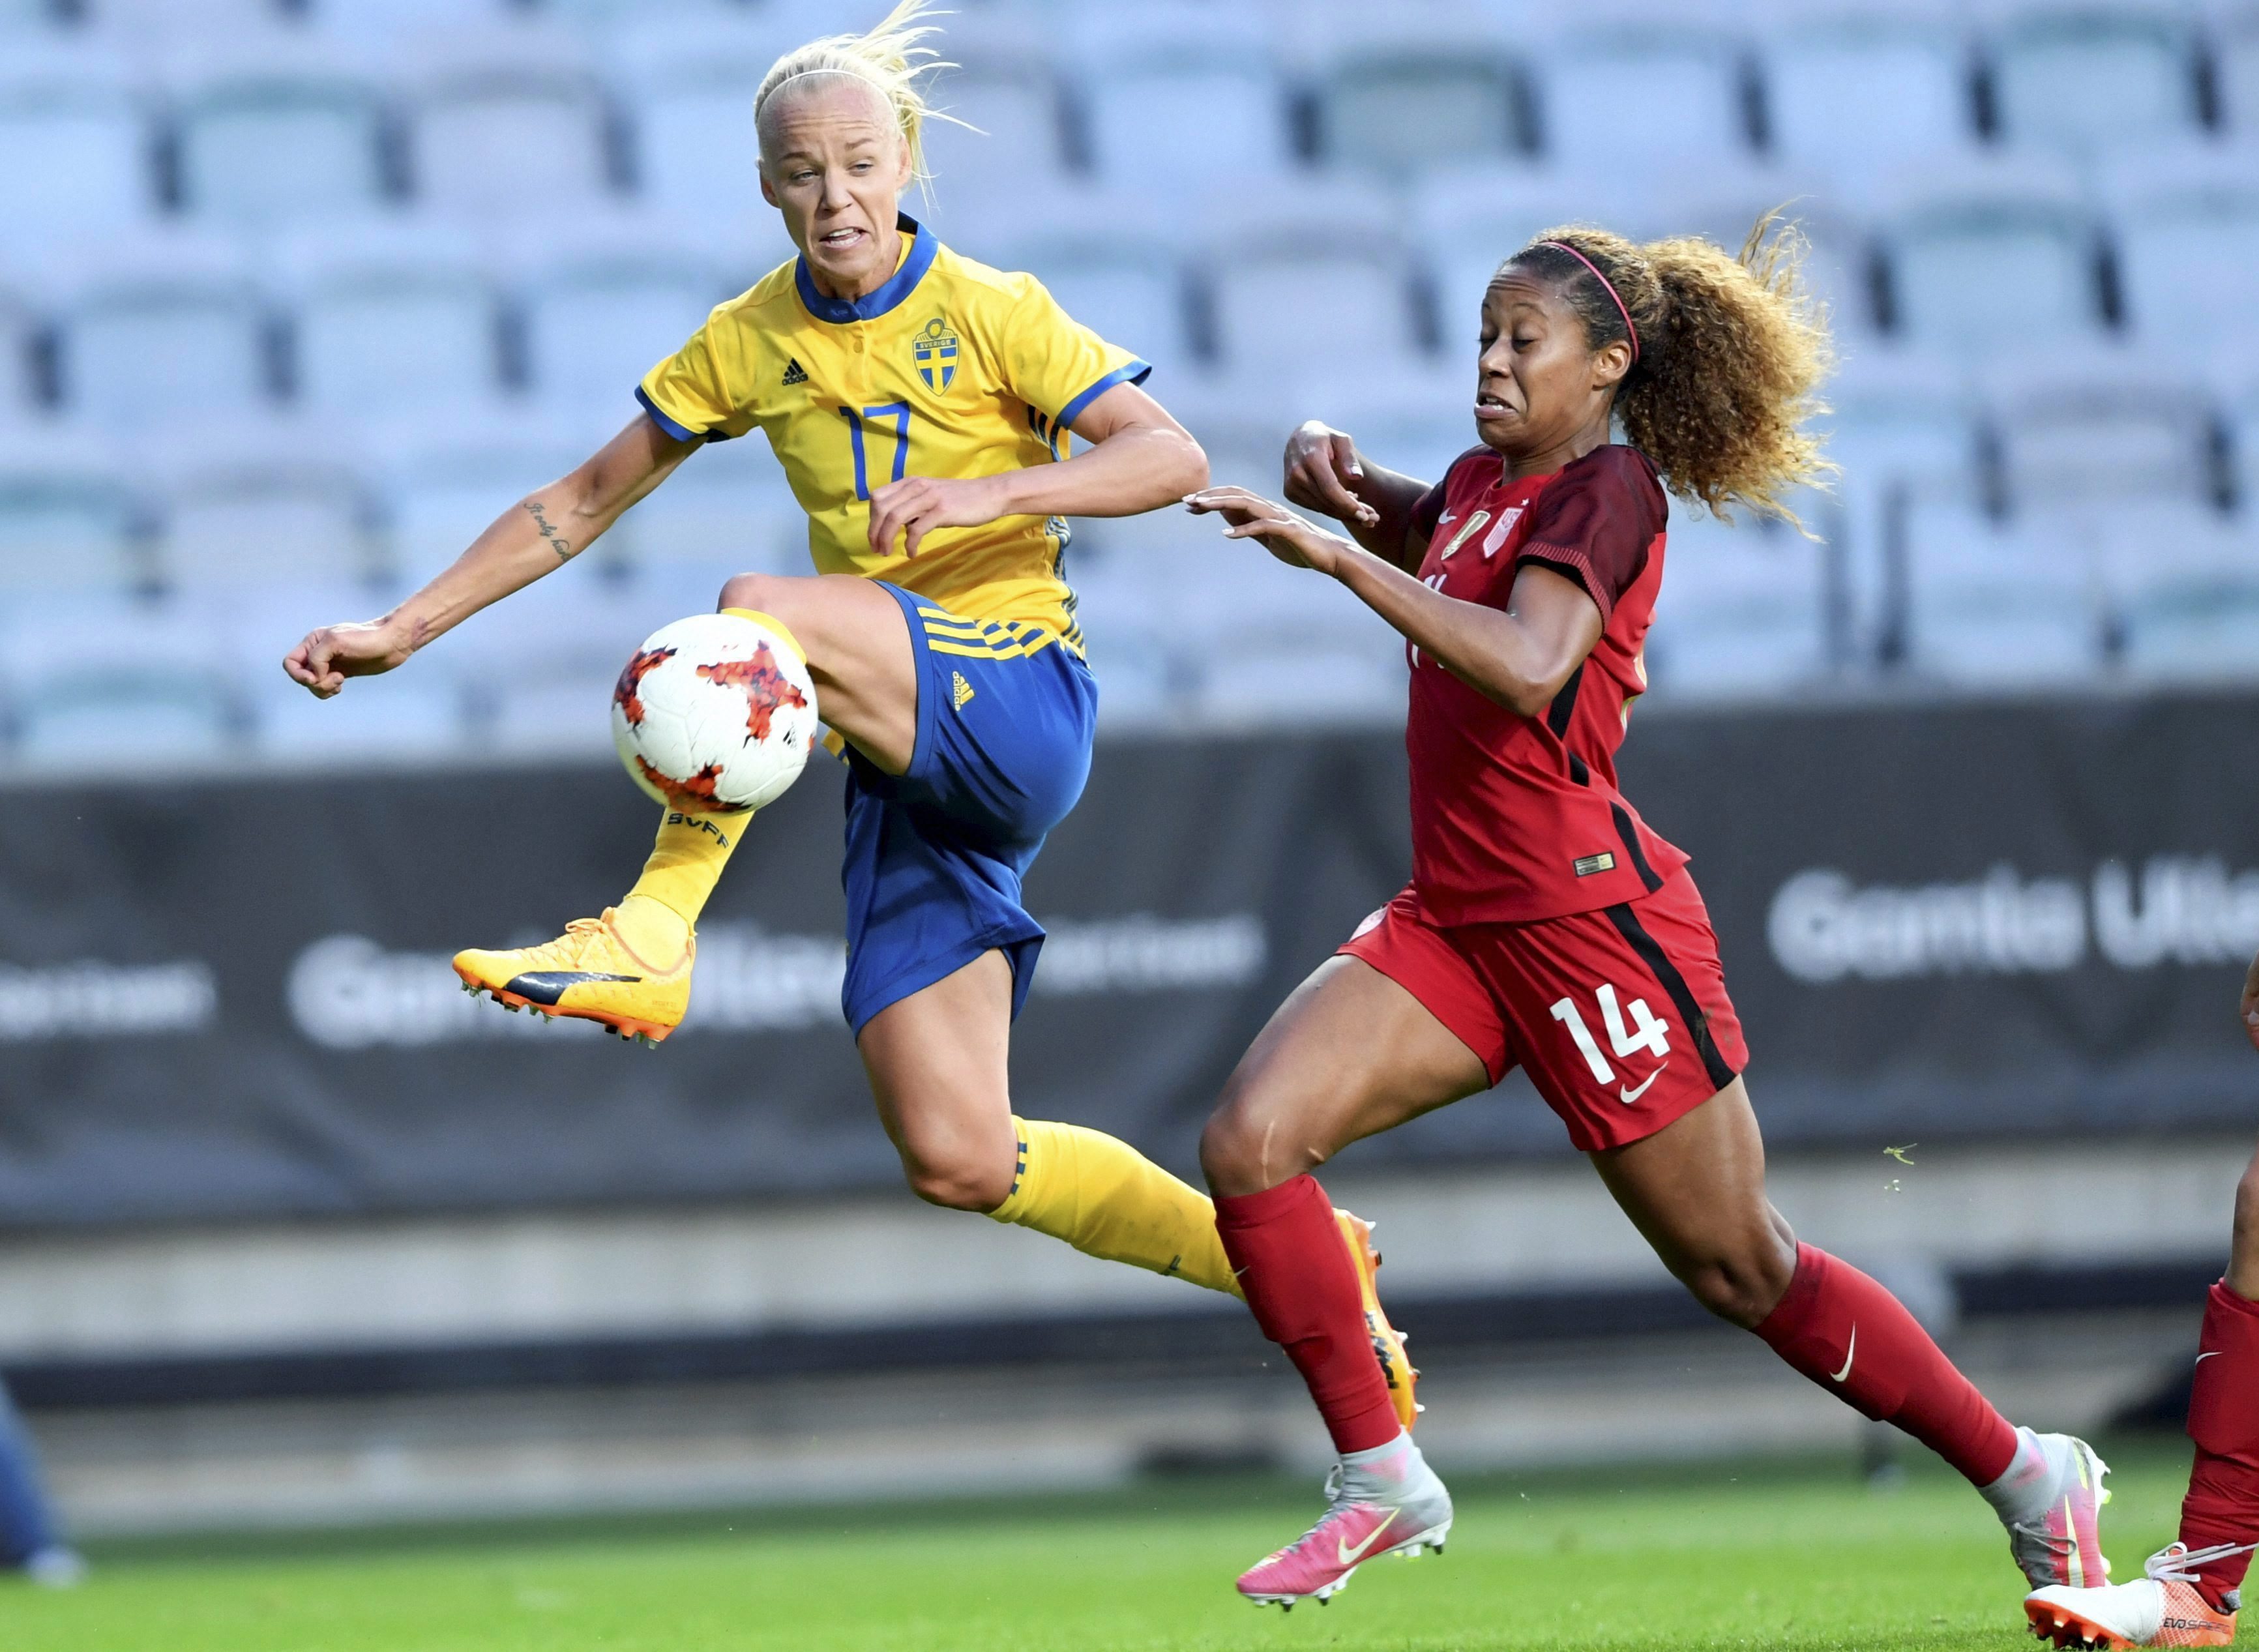 Women's international friendly soccer match between Sweden and the USA